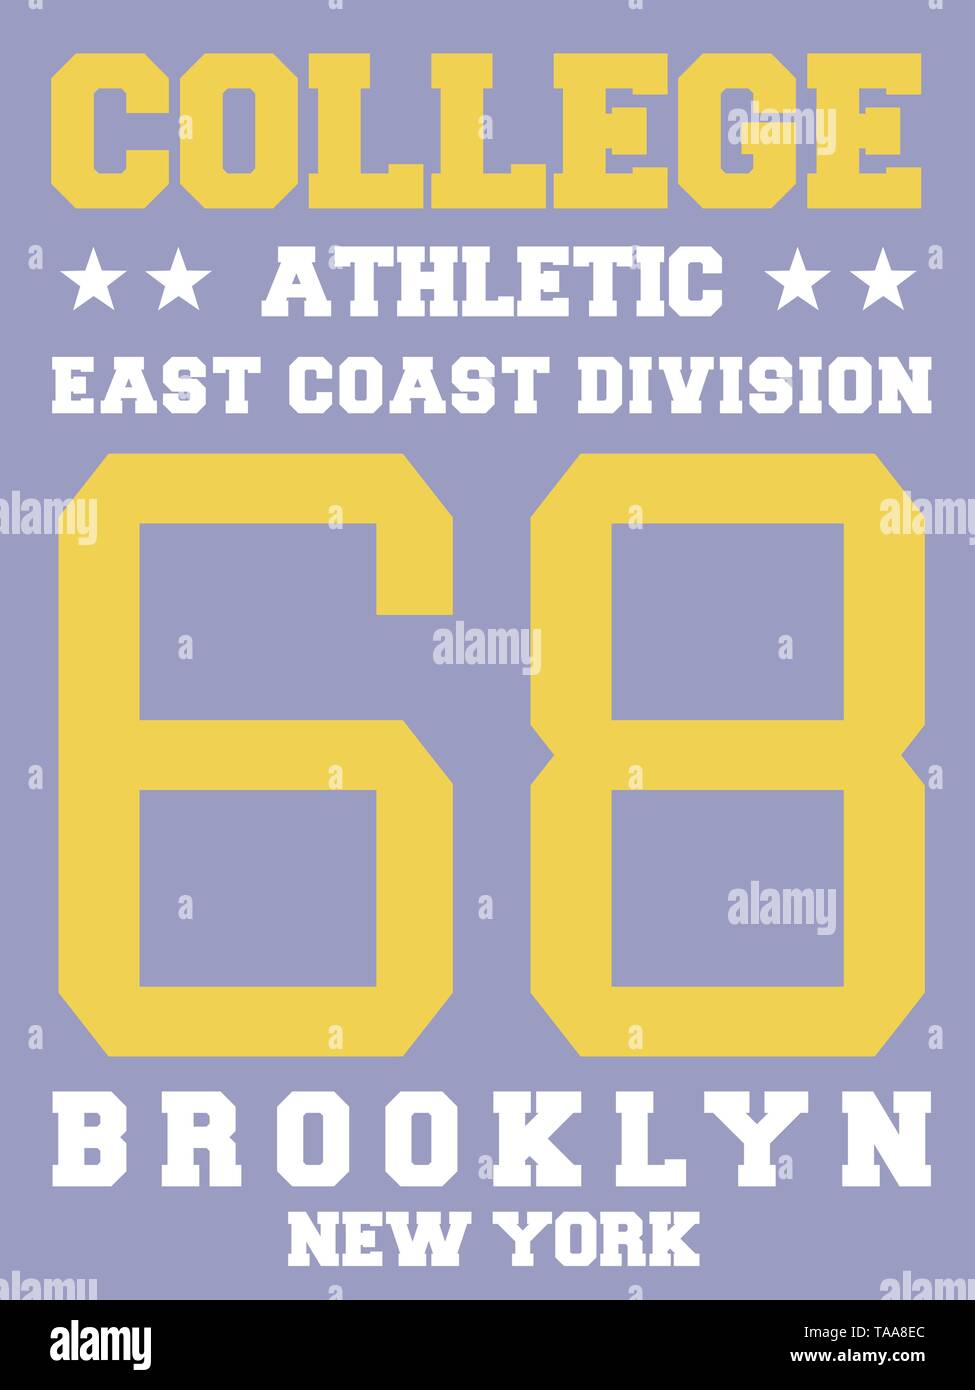 Brooklyn College Sports Font | Sticker